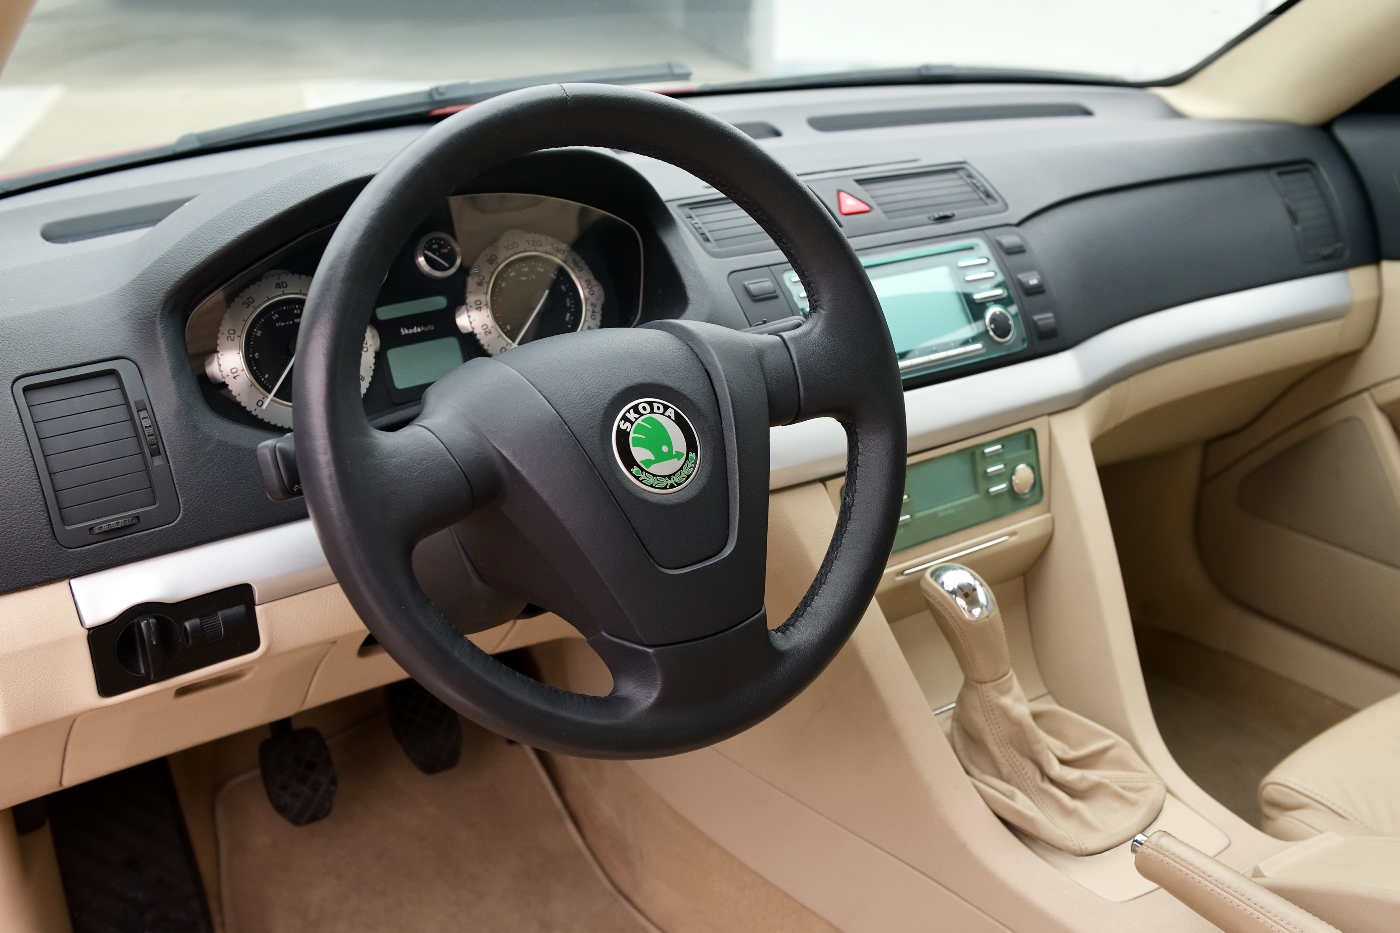 skoda-tudor-2002-interior-steering-wheel.jpg